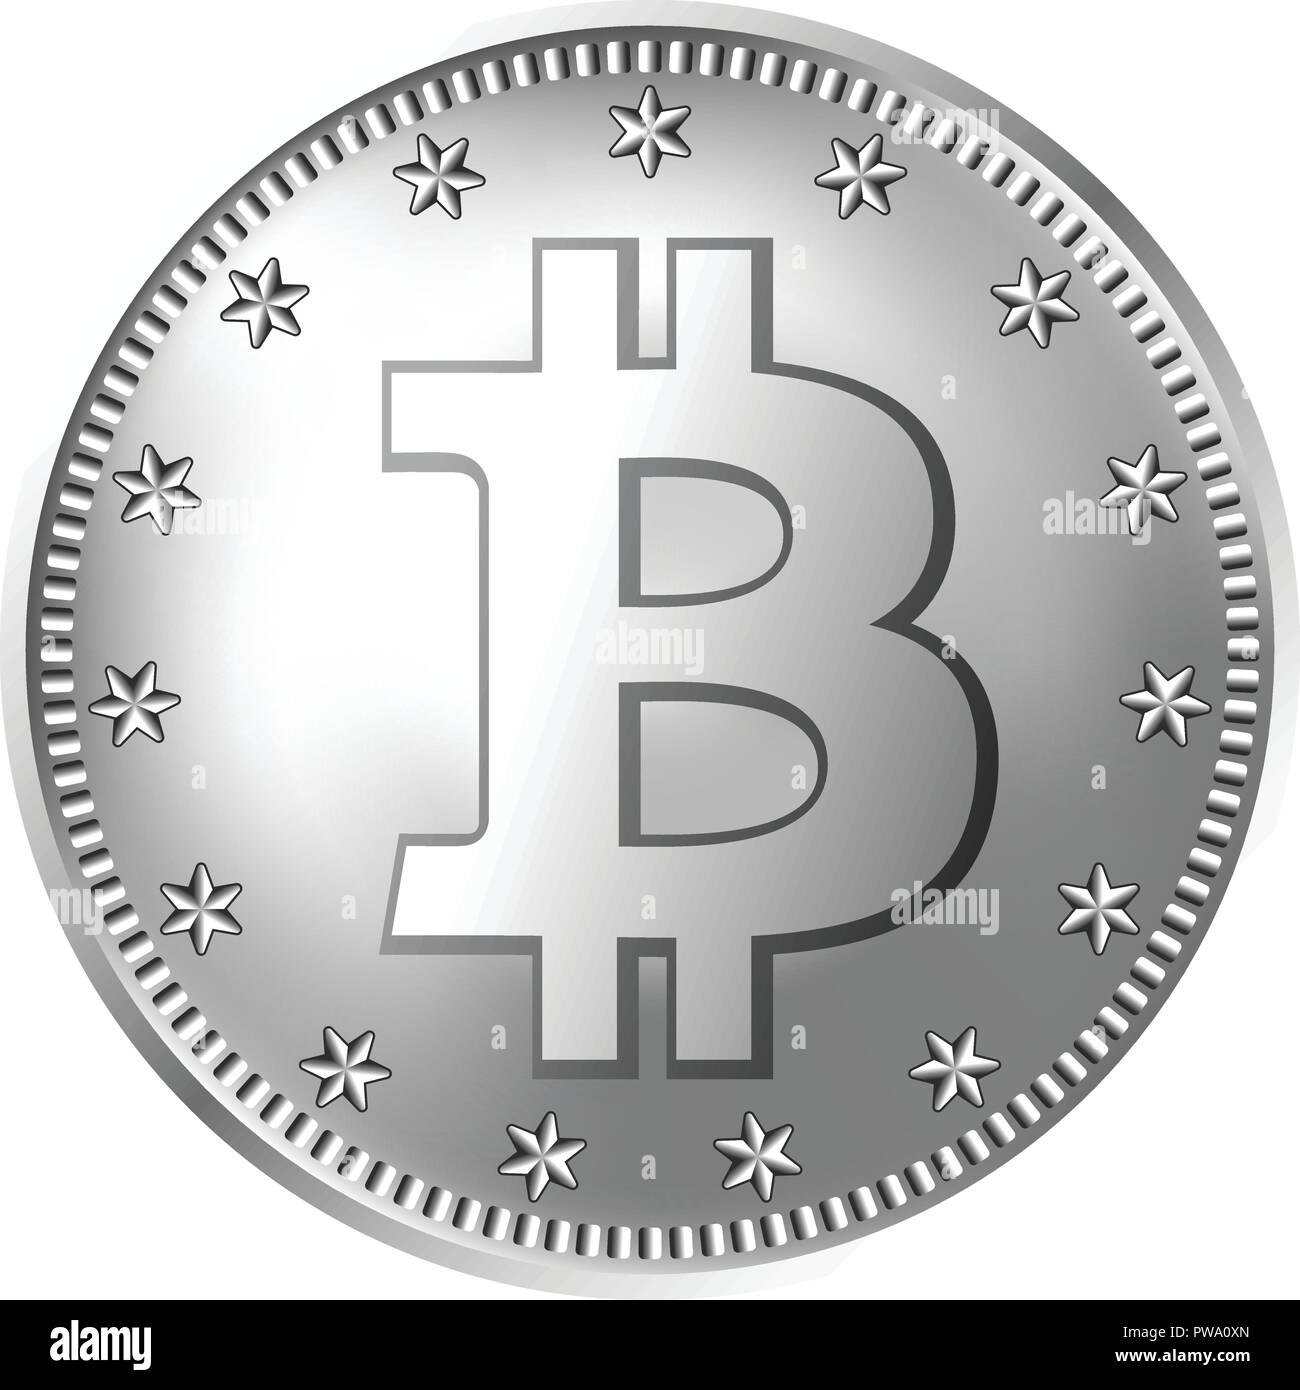 Bitcoin silver coin. Stock Vector